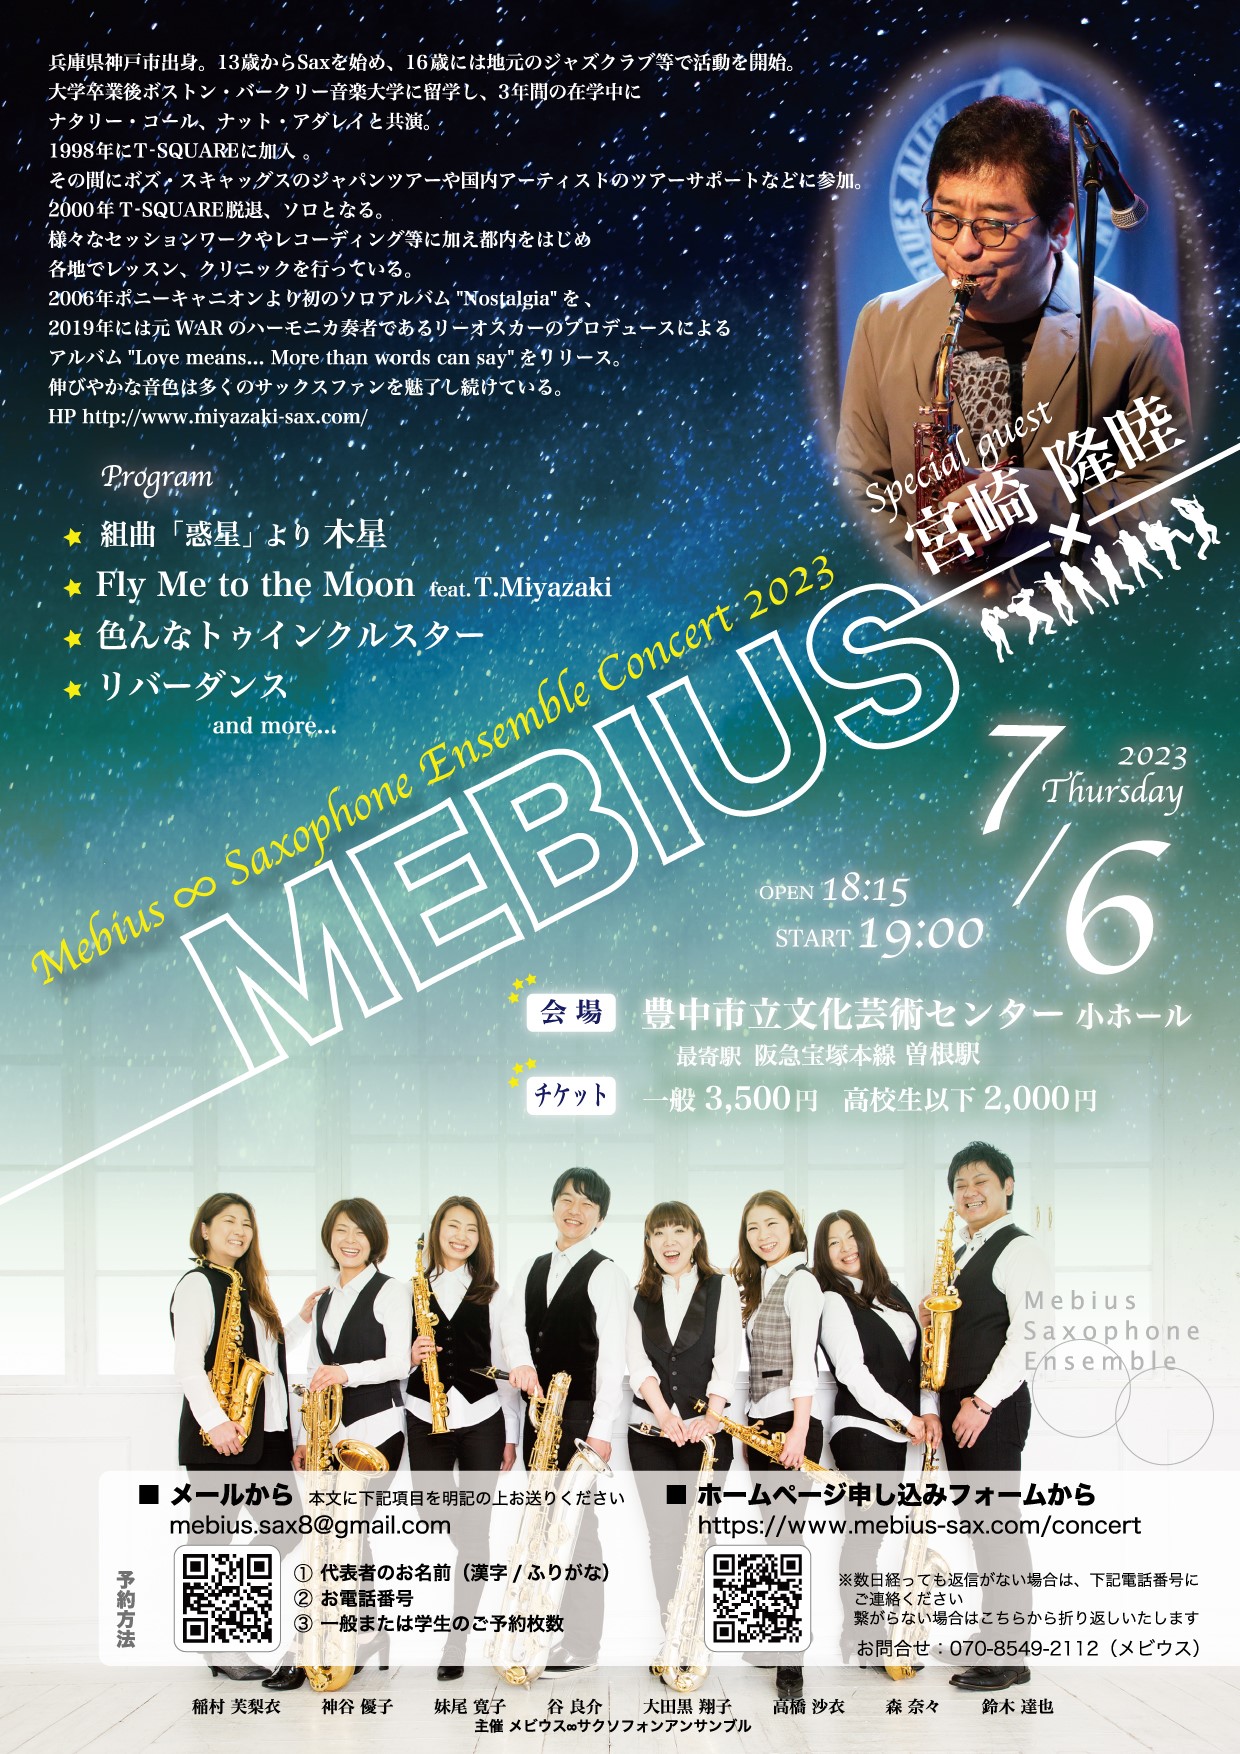 Mebius∞Saxophone Ensemble<br>Concert 2023